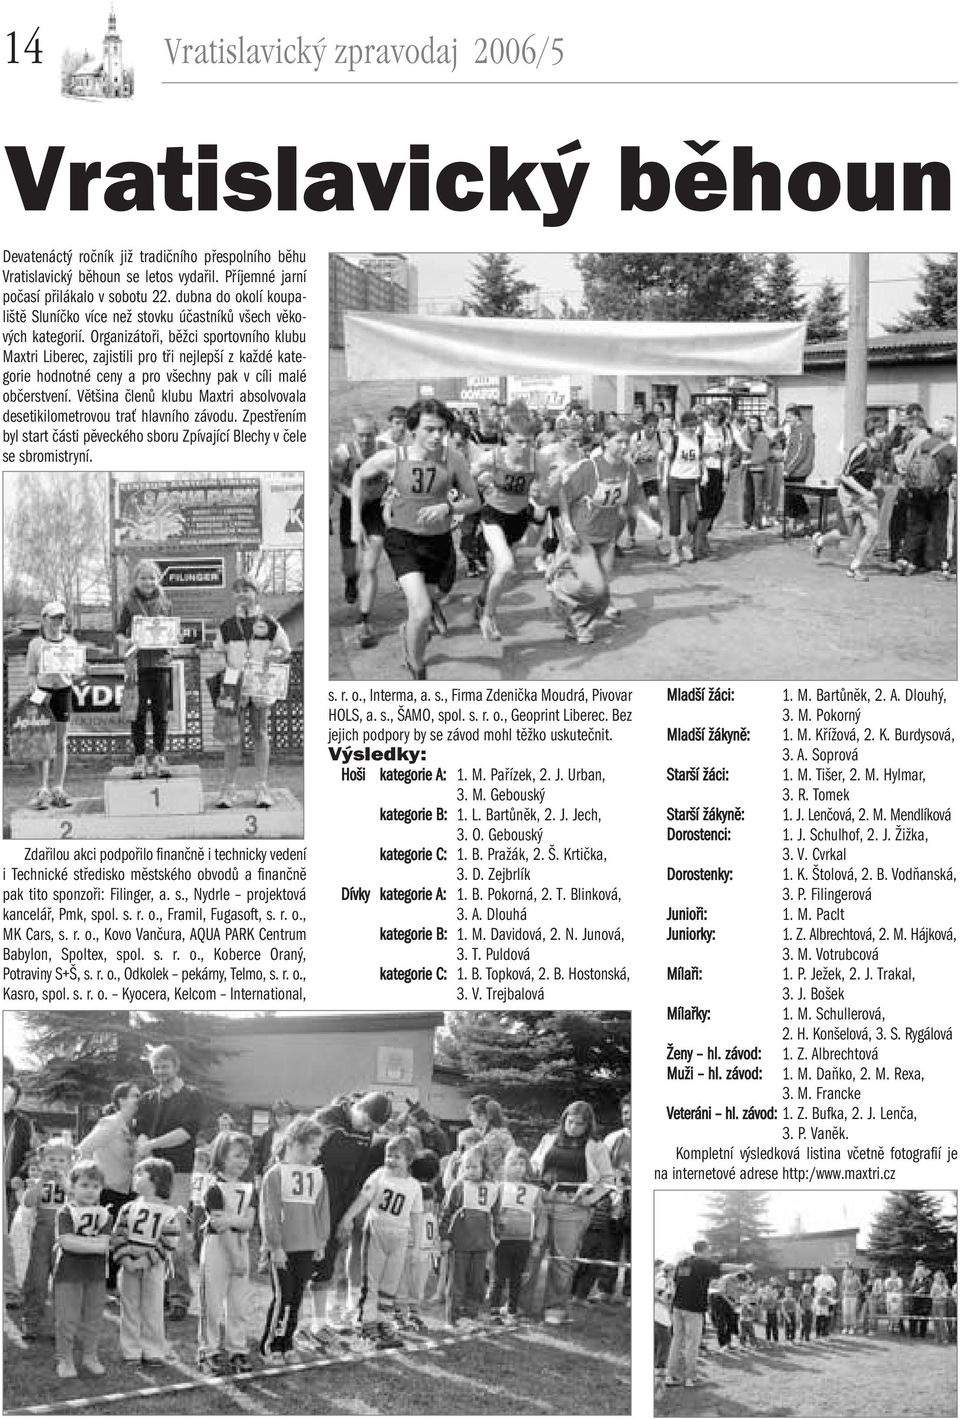 Organizátoři, běžci sportovního klubu Maxtri Liberec, zajistili pro tři nejlepší z každé kategorie hodnotné ceny a pro všechny pak v cíli malé občerstvení.